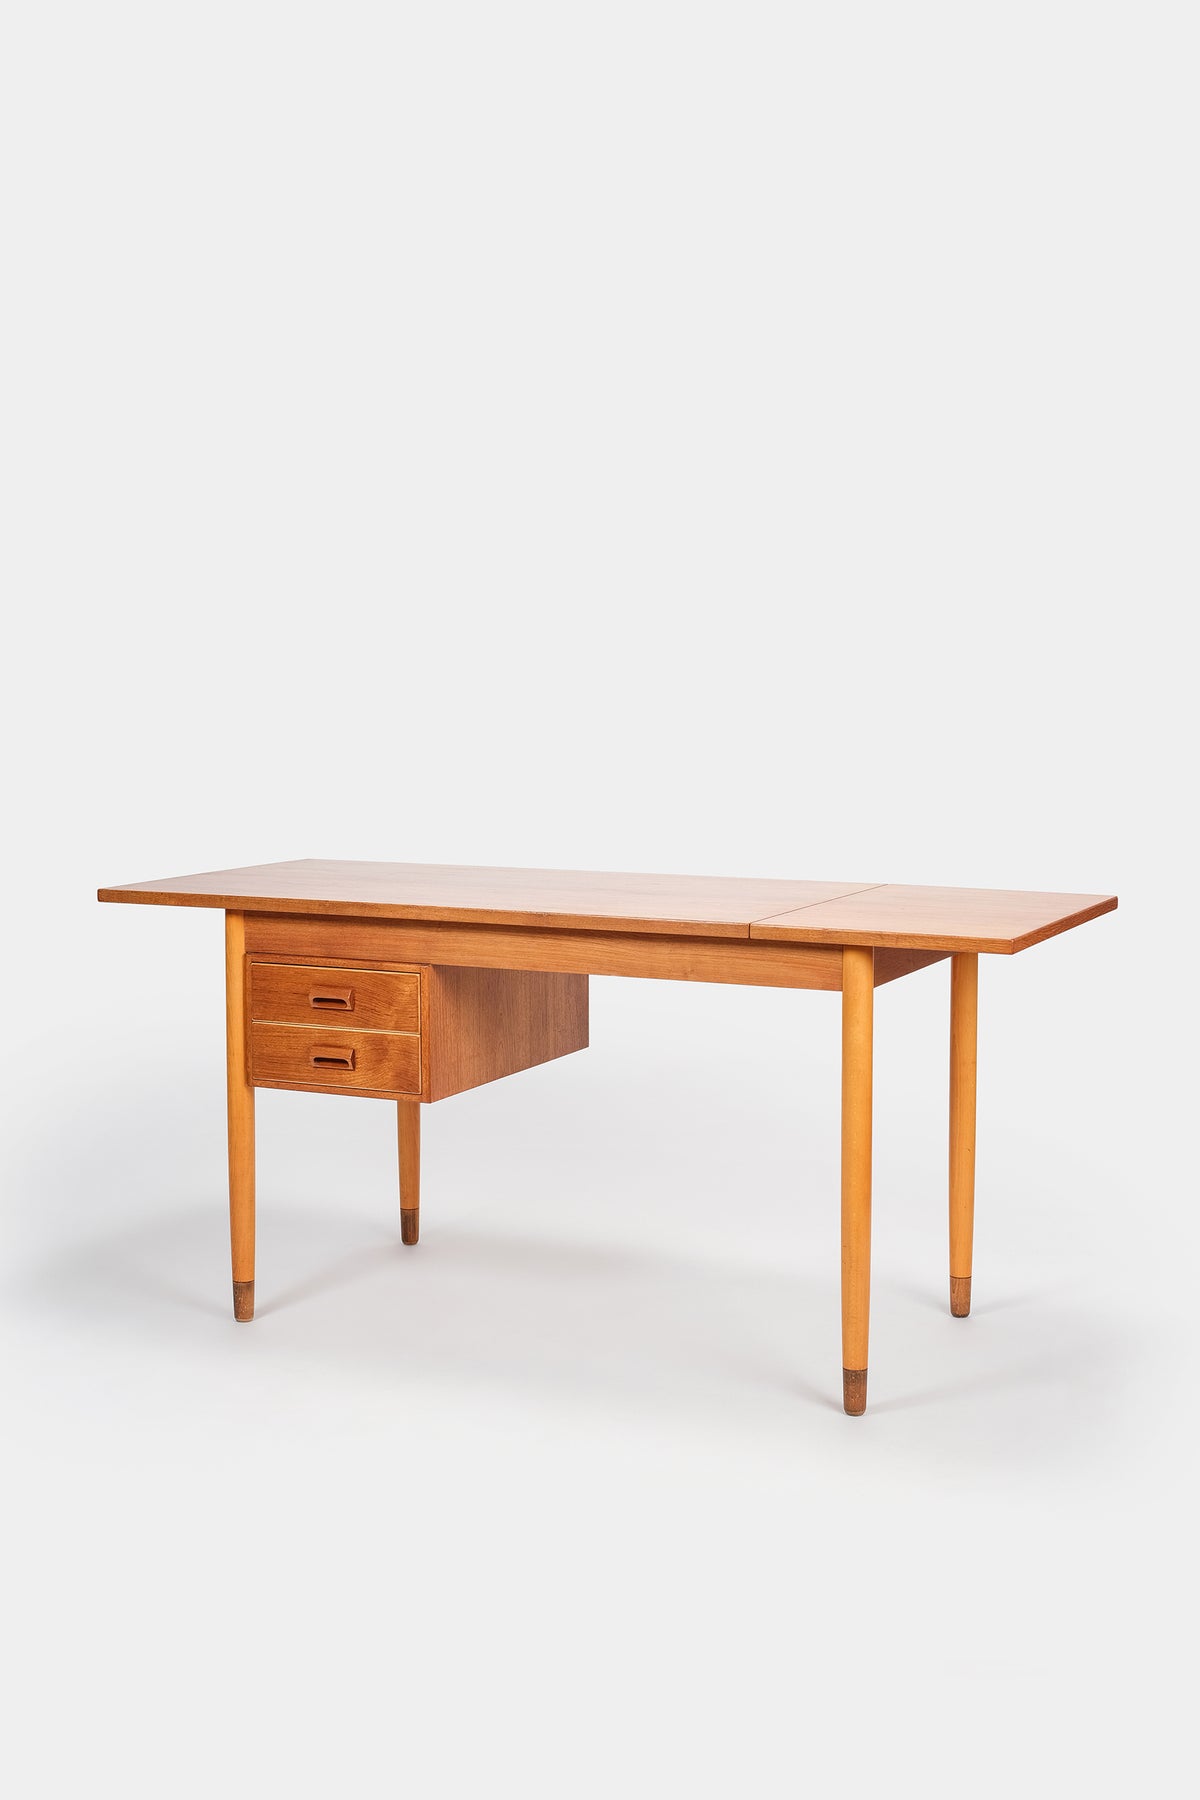 Borge Mogensen, Desk Model 131, 1952